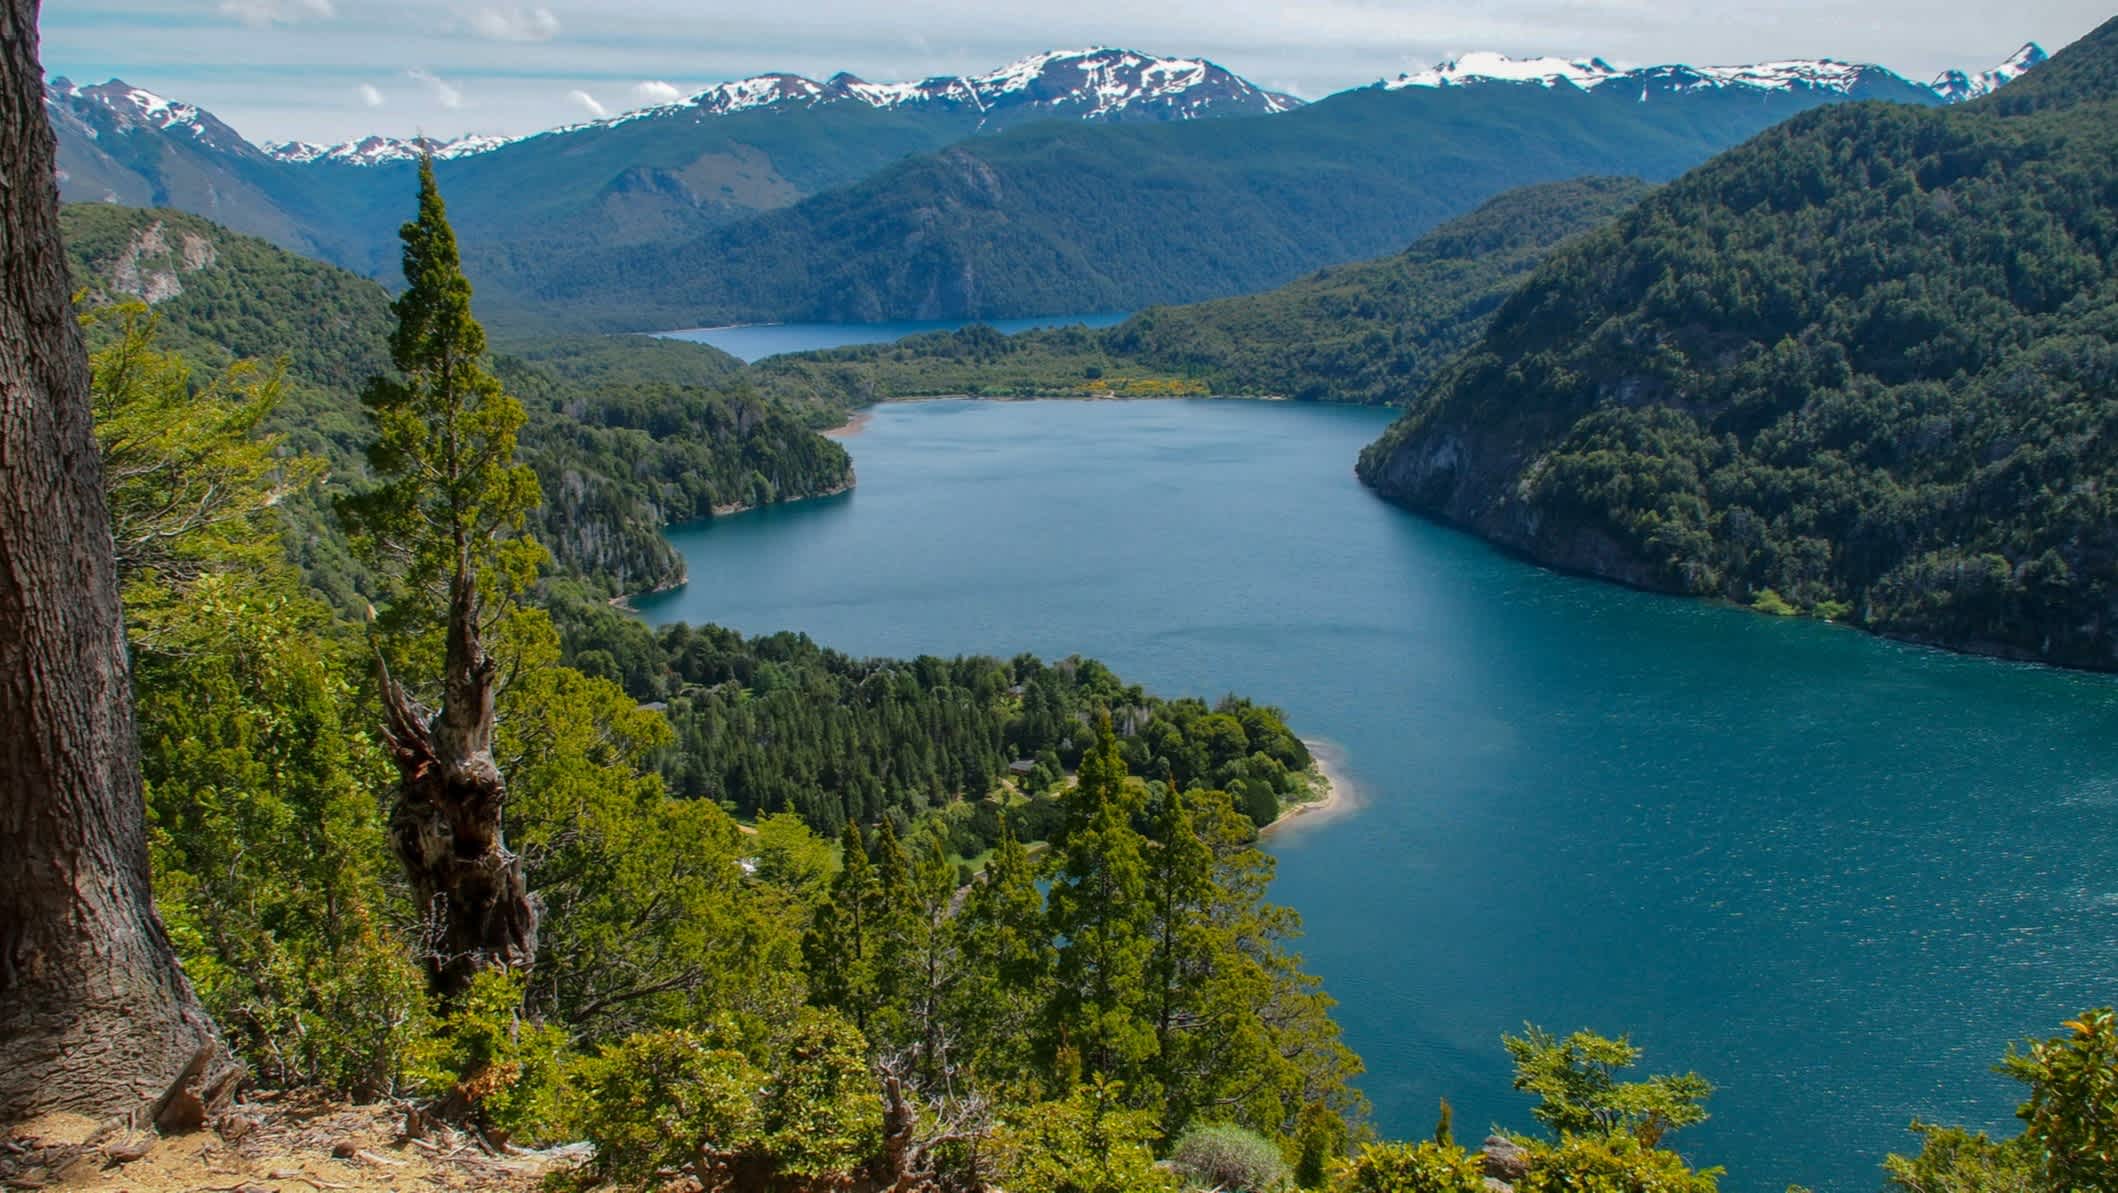 Vue sur le lac Lago verde et les montagnes en arrière-plan dans le parc national Los Alerces, Argentine